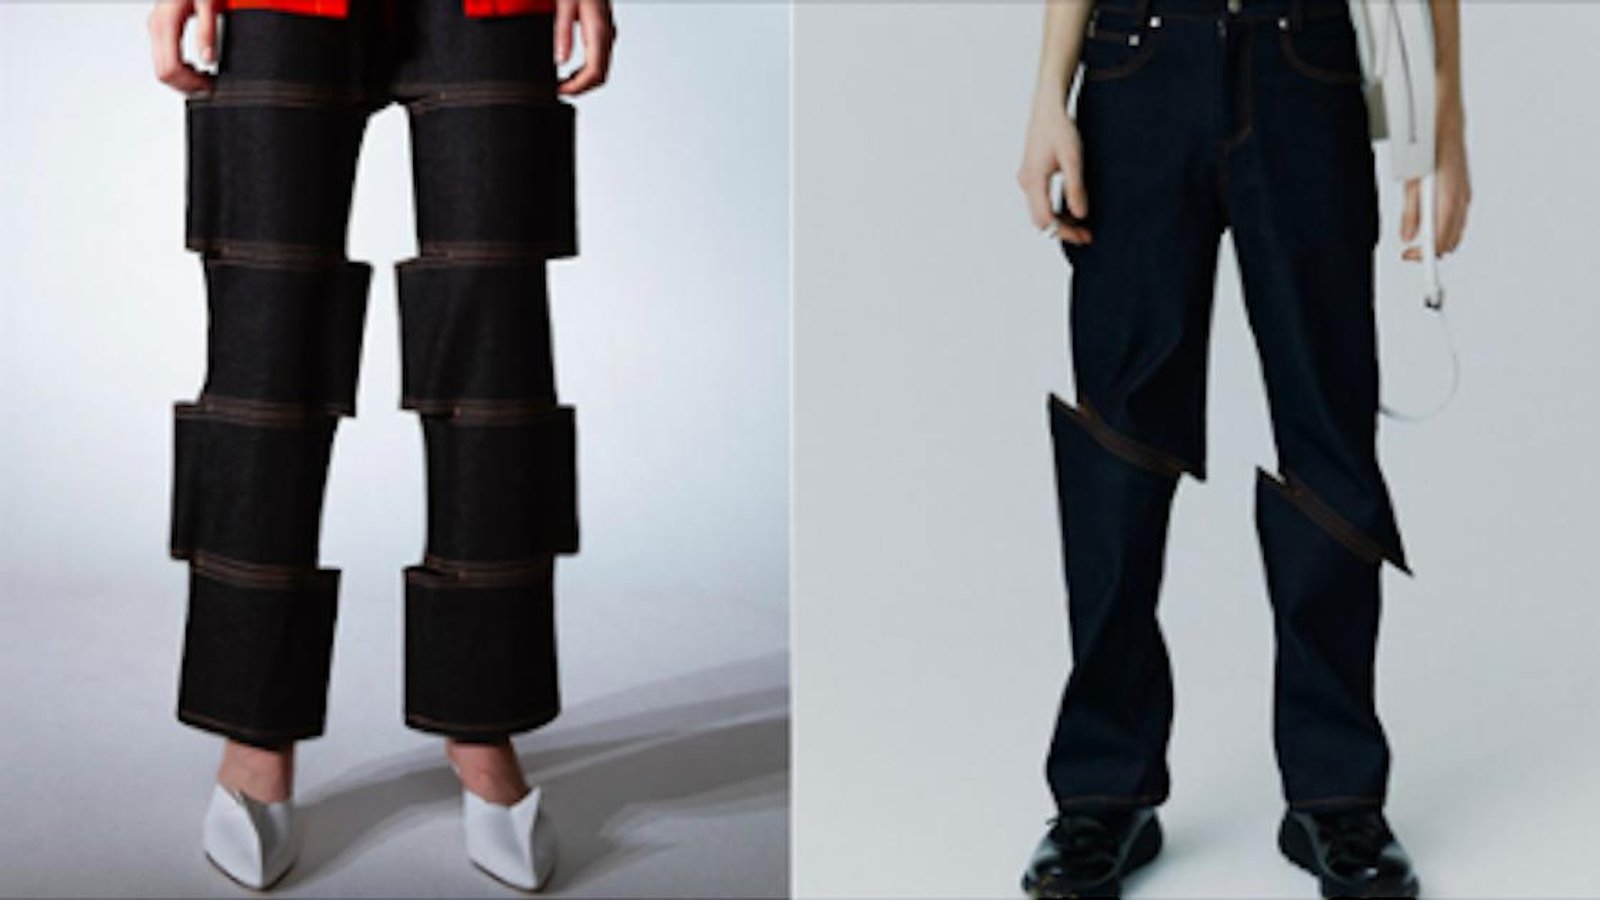 Du nouveau dans le monde de la mode: des jeans qui jouent avec nos perceptions!